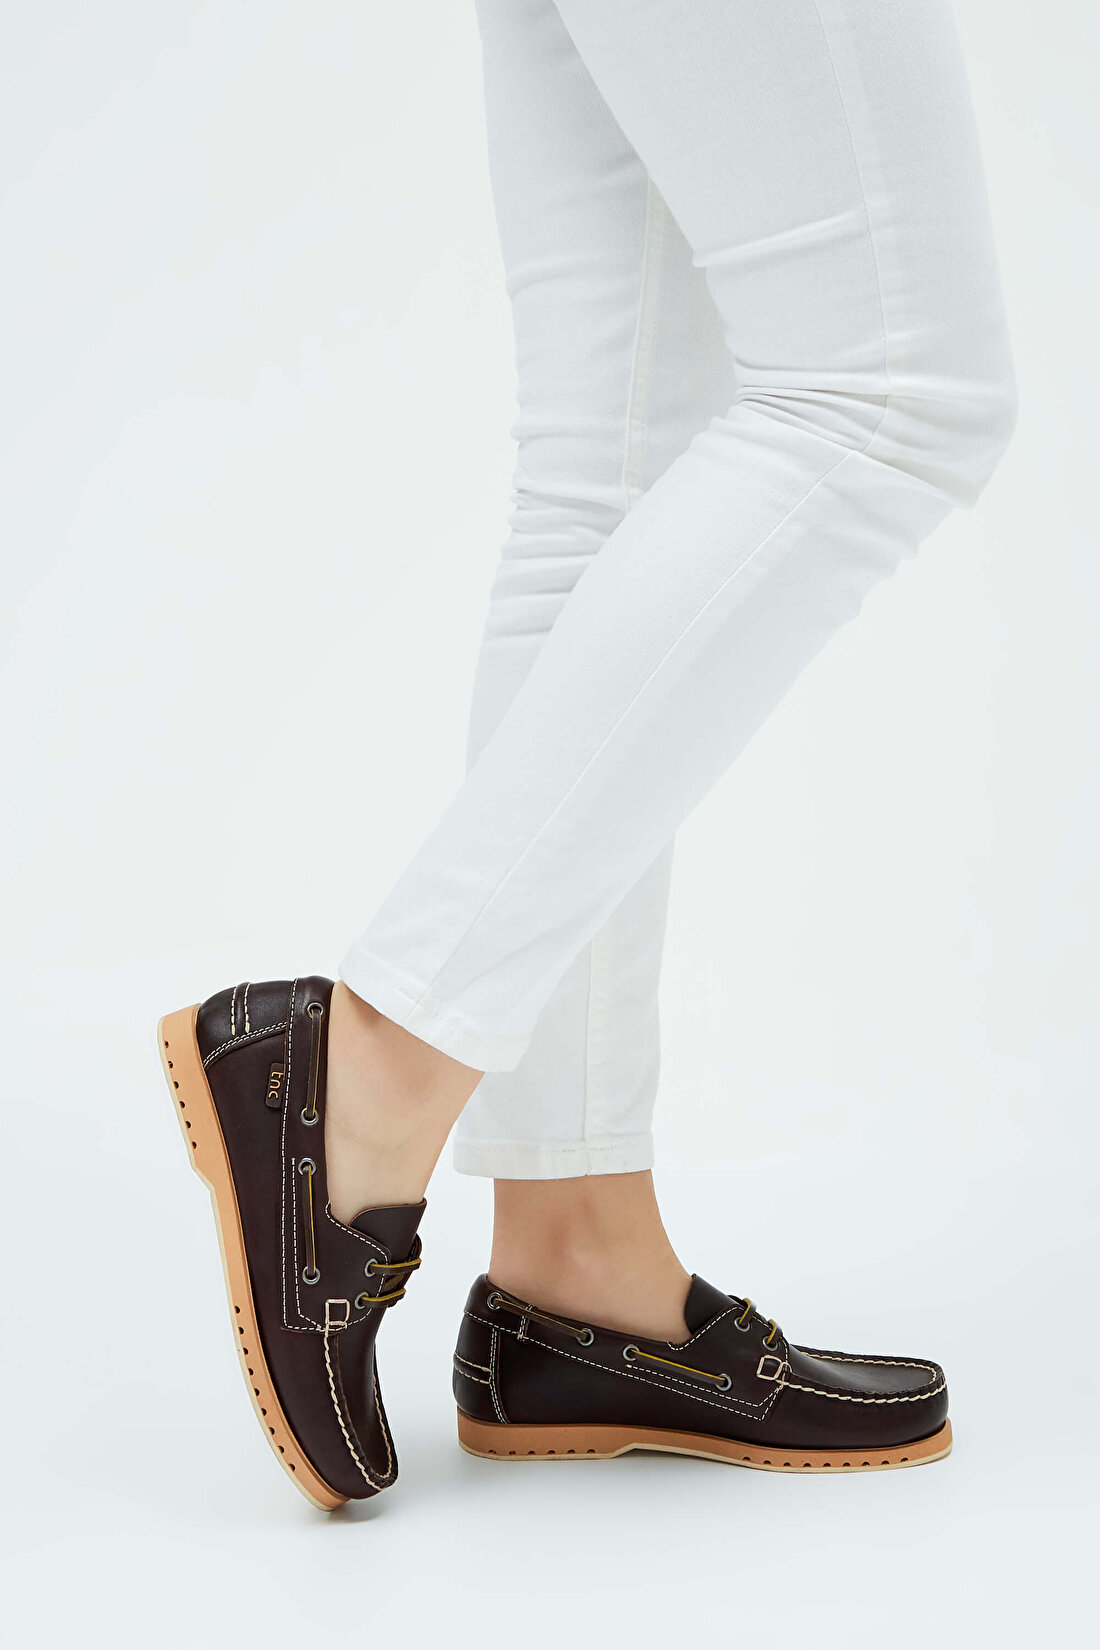 Tamer Tanca Kadın Hakiki Deri Kahverengi Loafer Ayakkabı